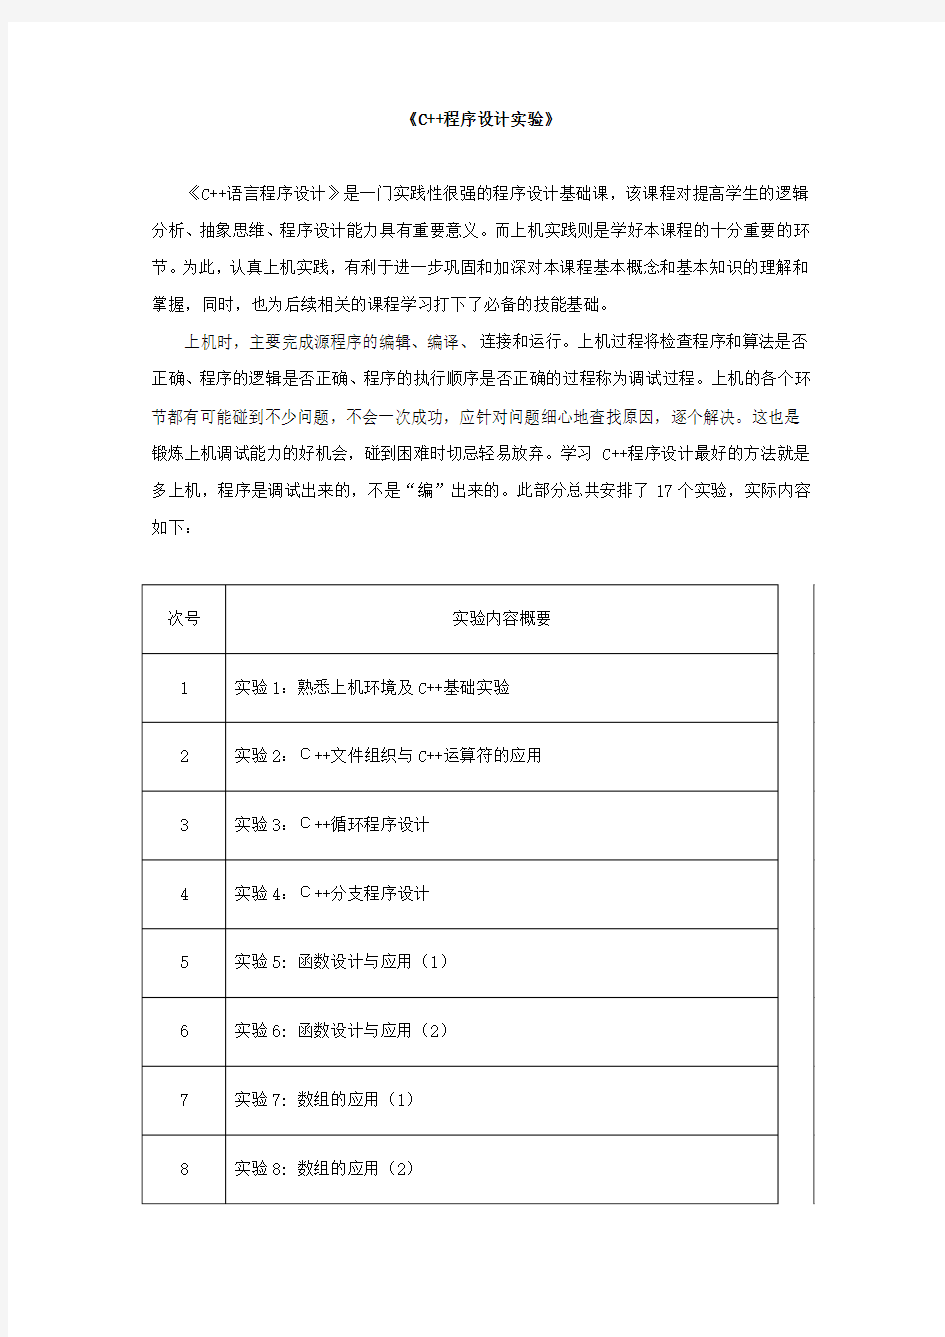 zucc 刘加海 C++程序设计实验报告